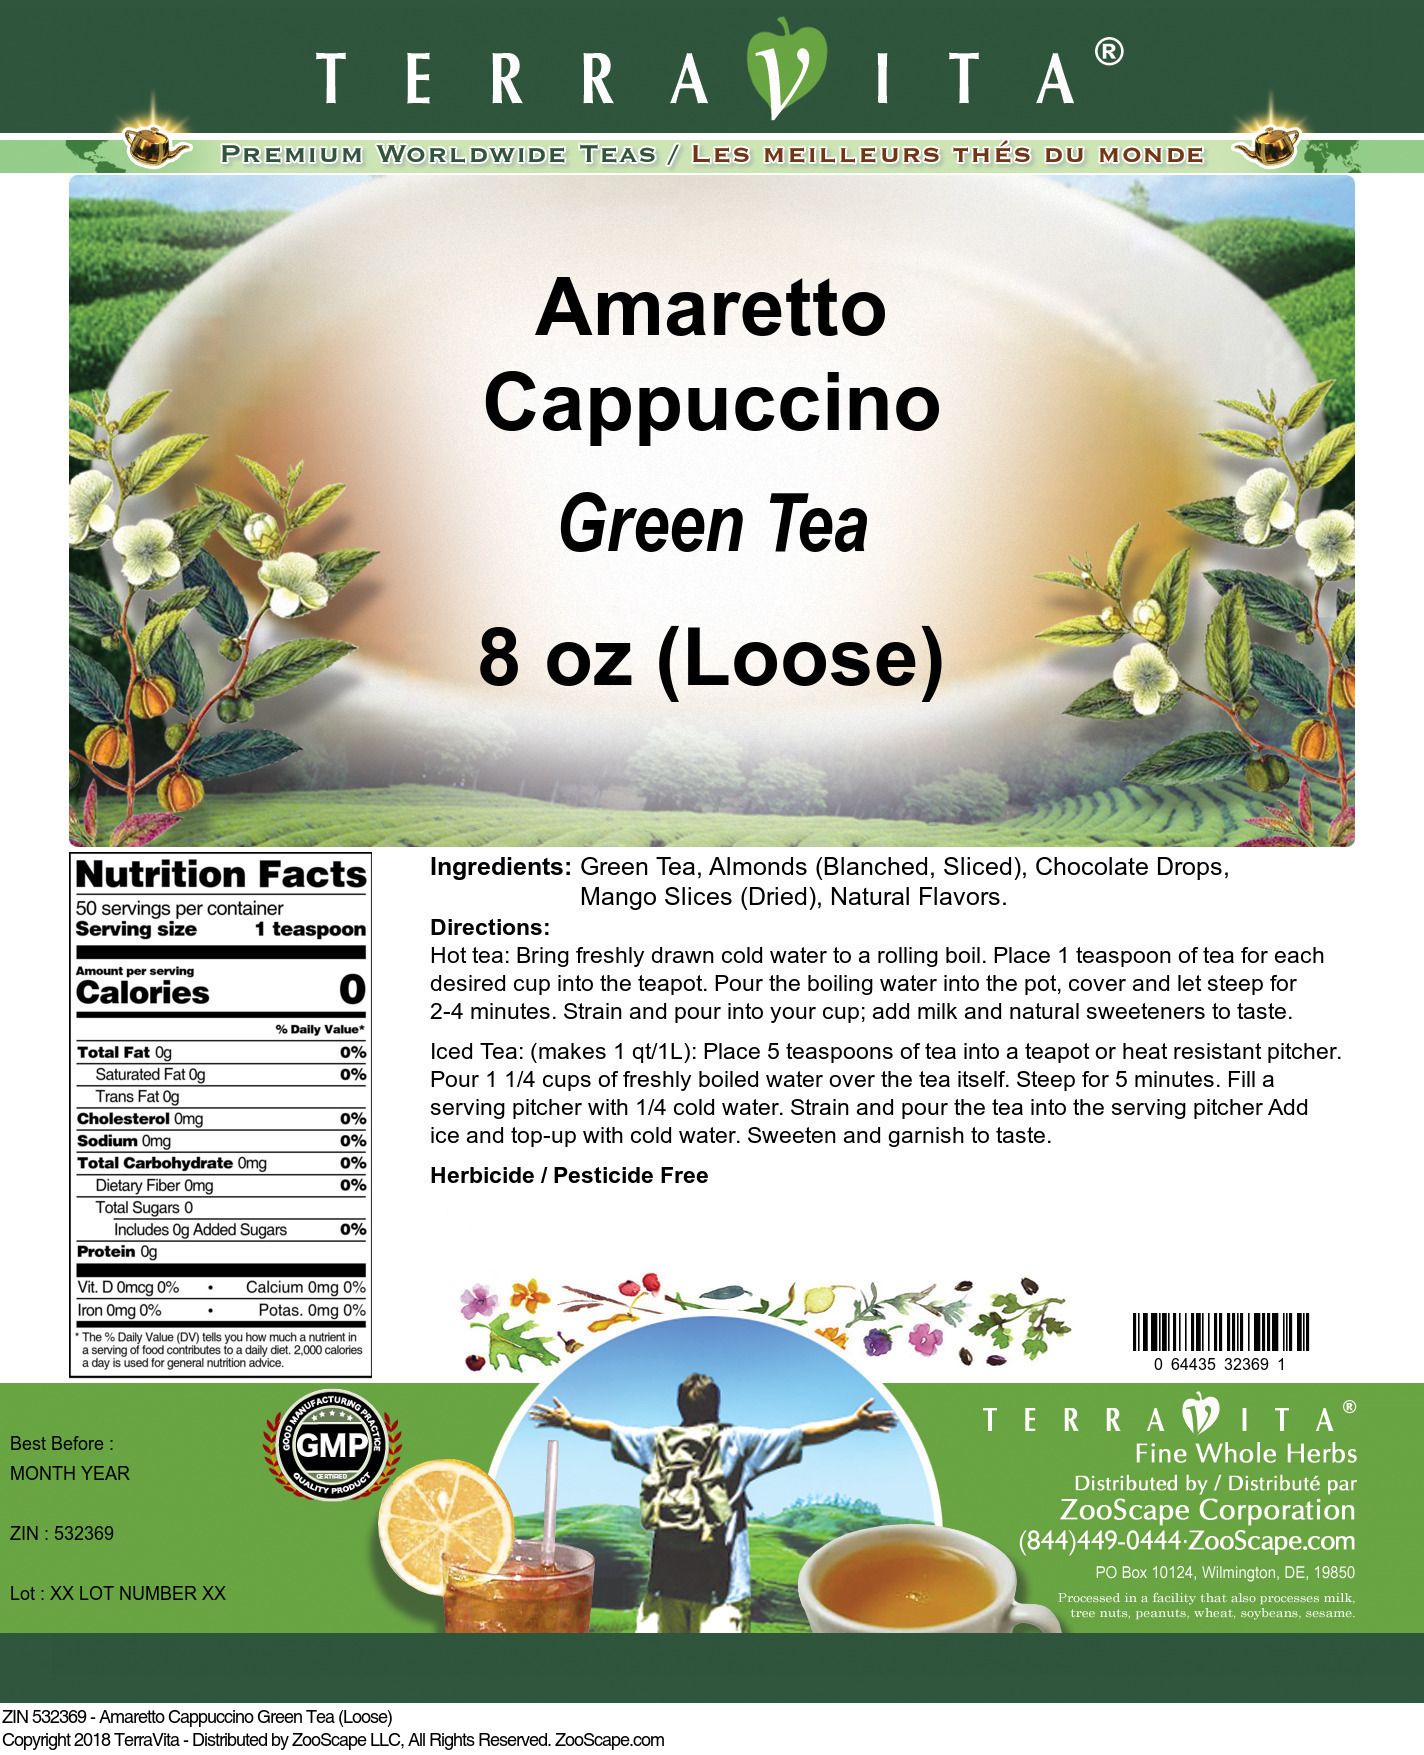 Amaretto Cappuccino Green Tea (Loose) - Label